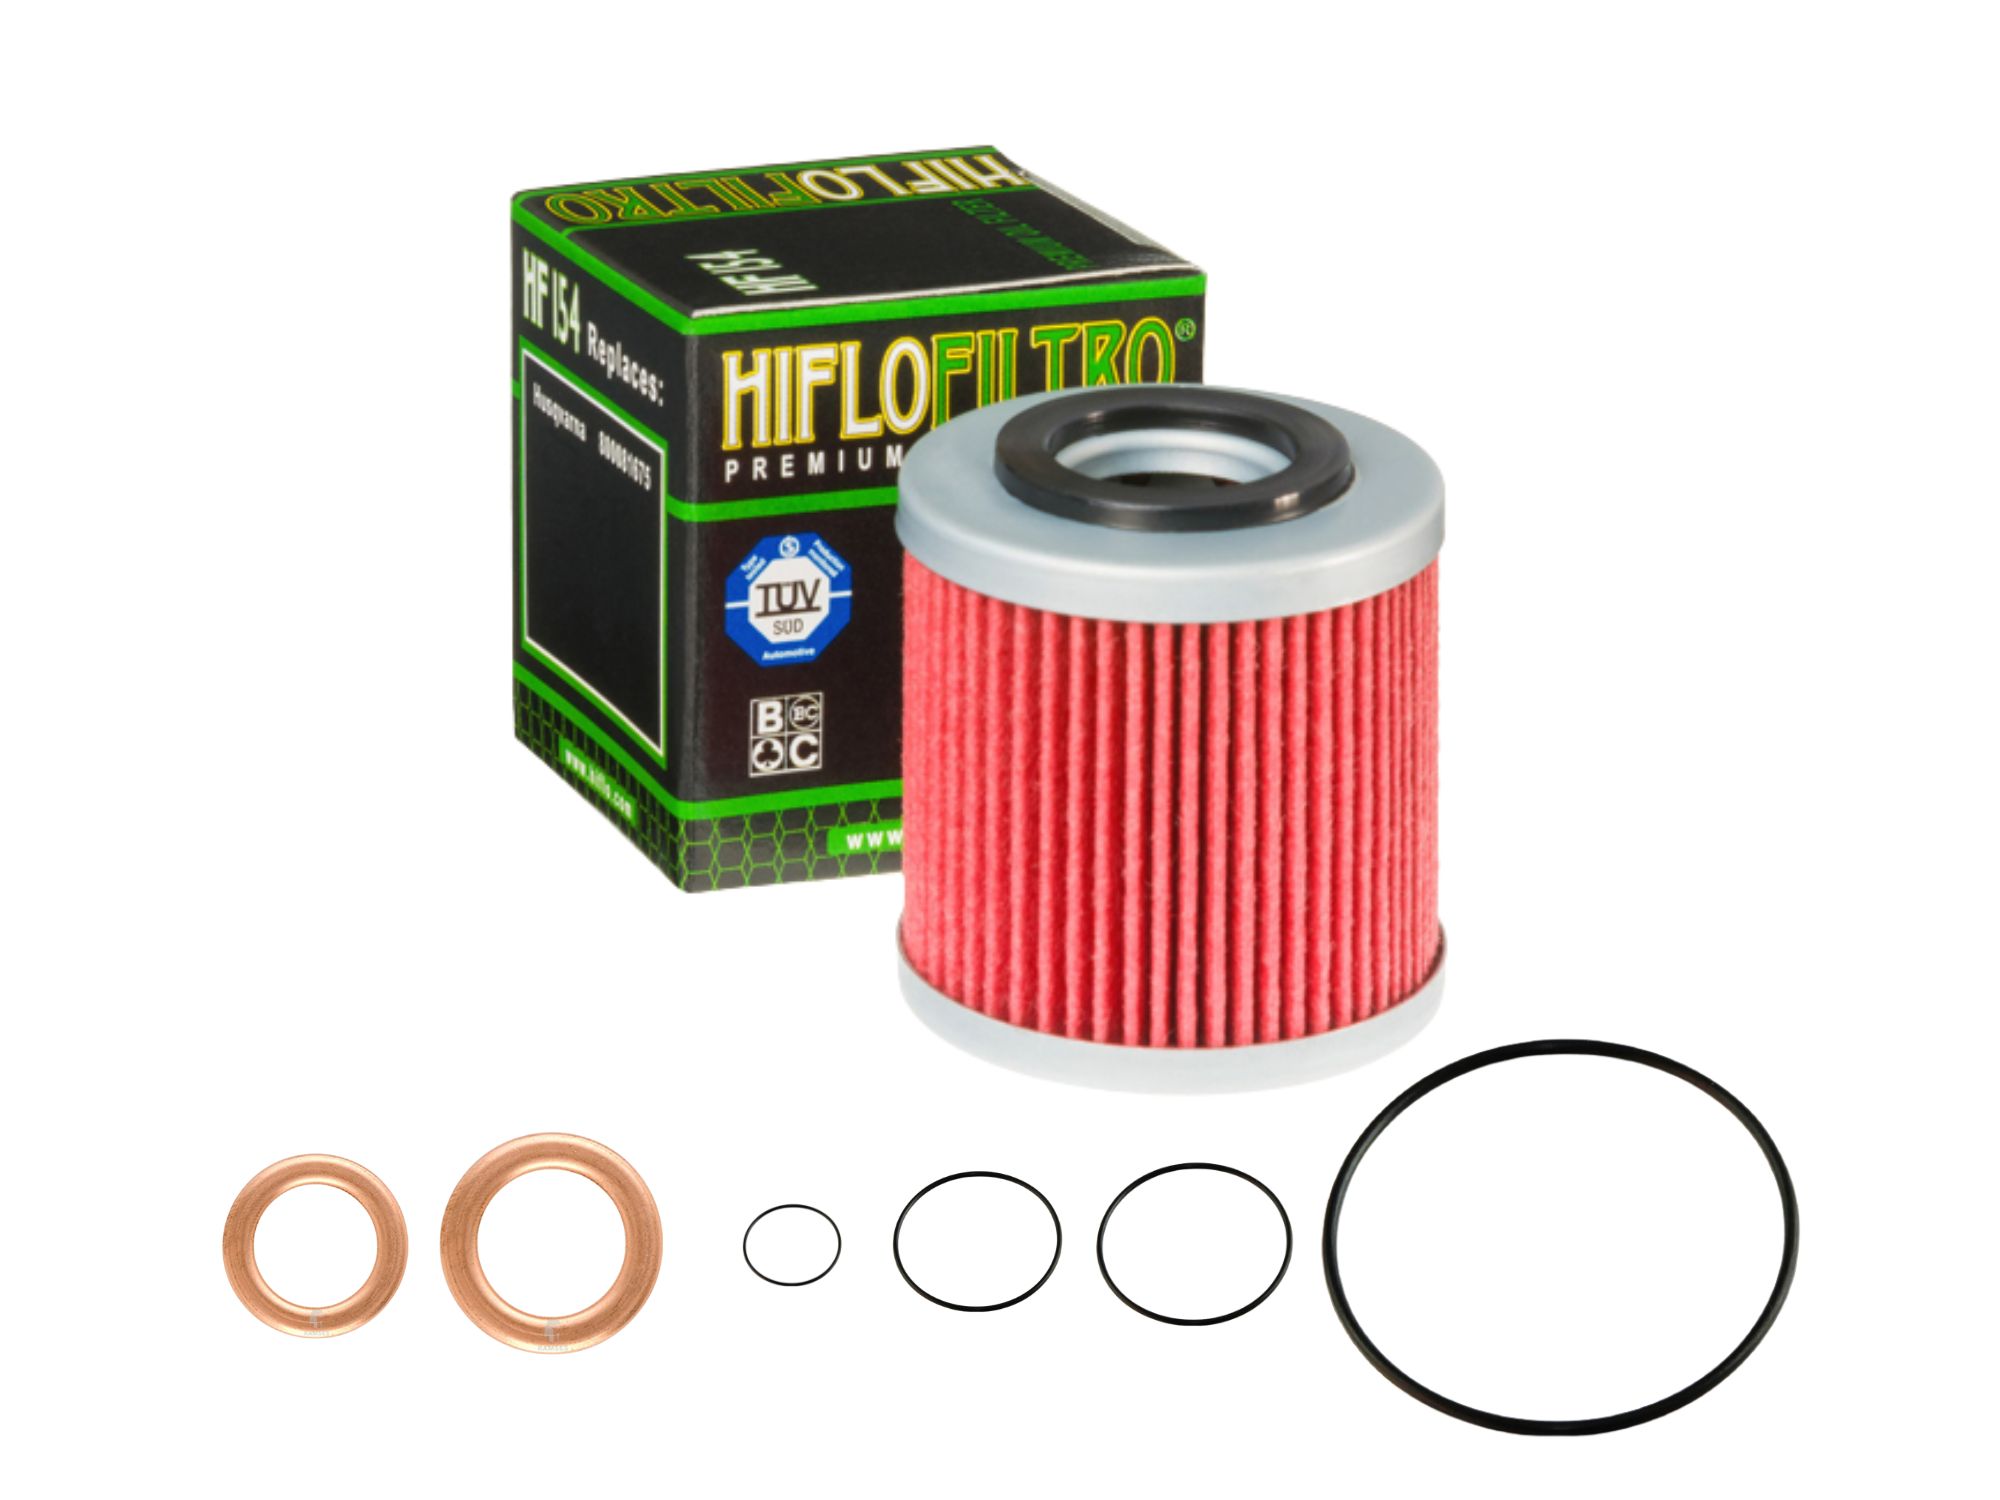 Oil filter kit suitable for Husqvarna TC TE 250 450 02-07 TC TE SM 510 05-07